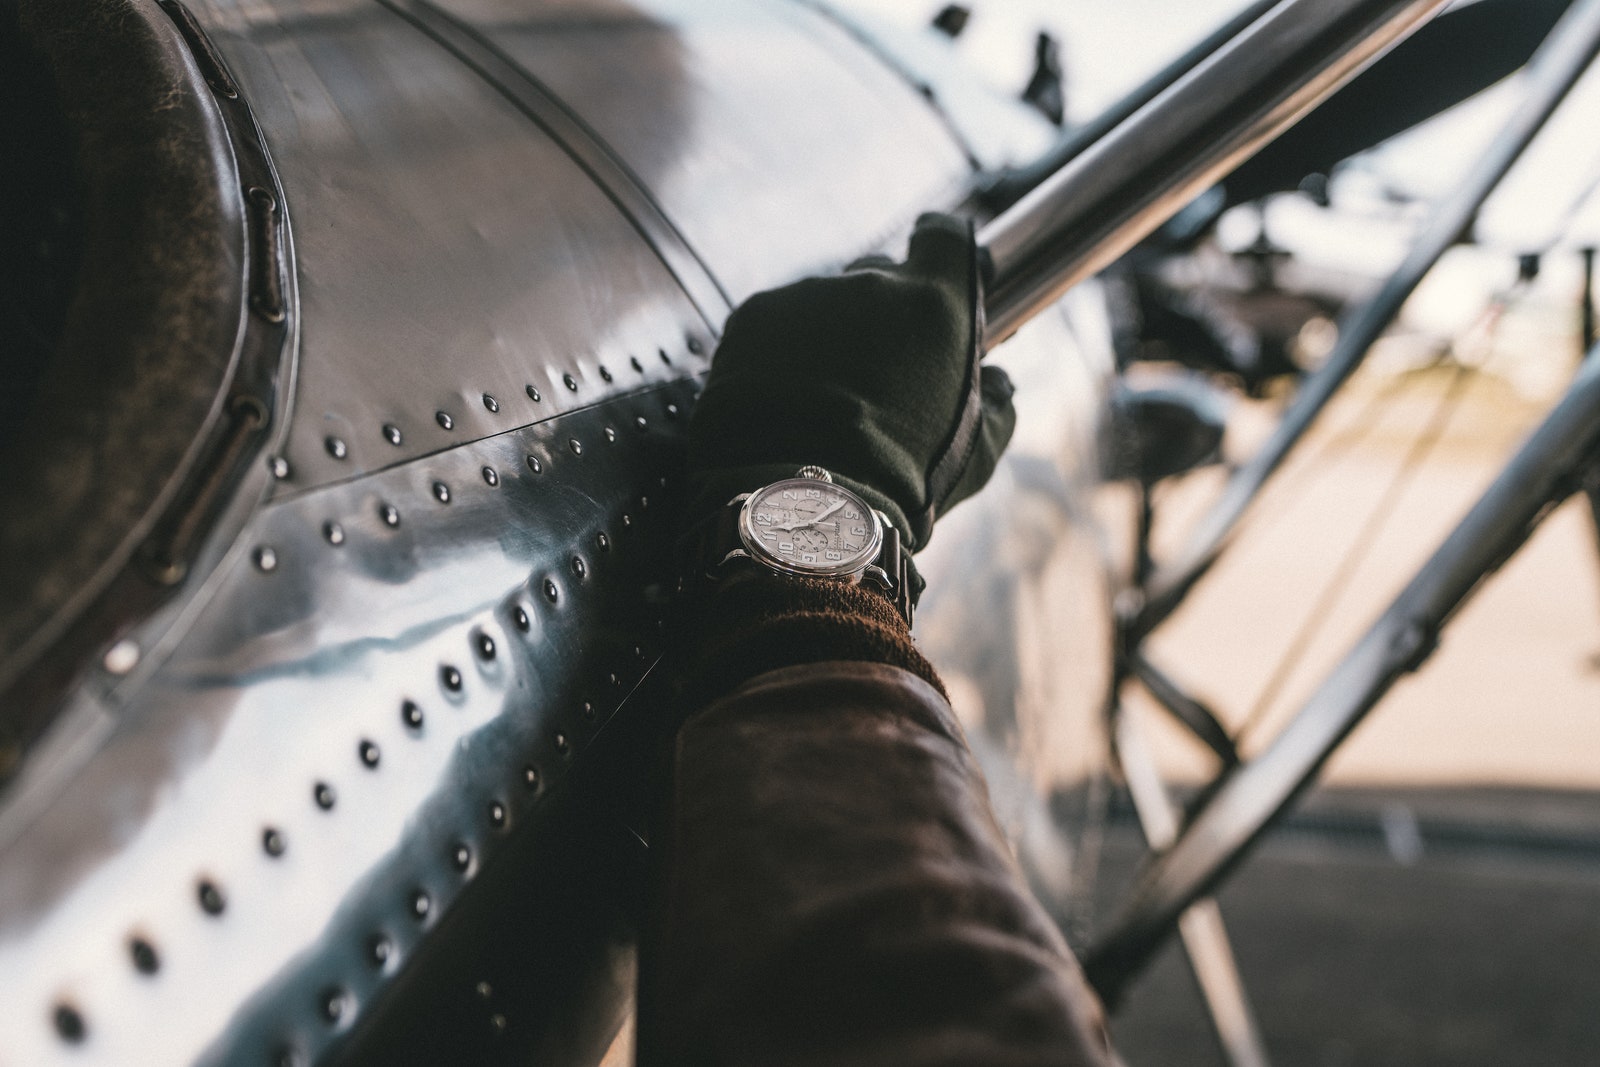 Высокий полет почему авиаторские часы — модный аксессуар осеннего гардероба